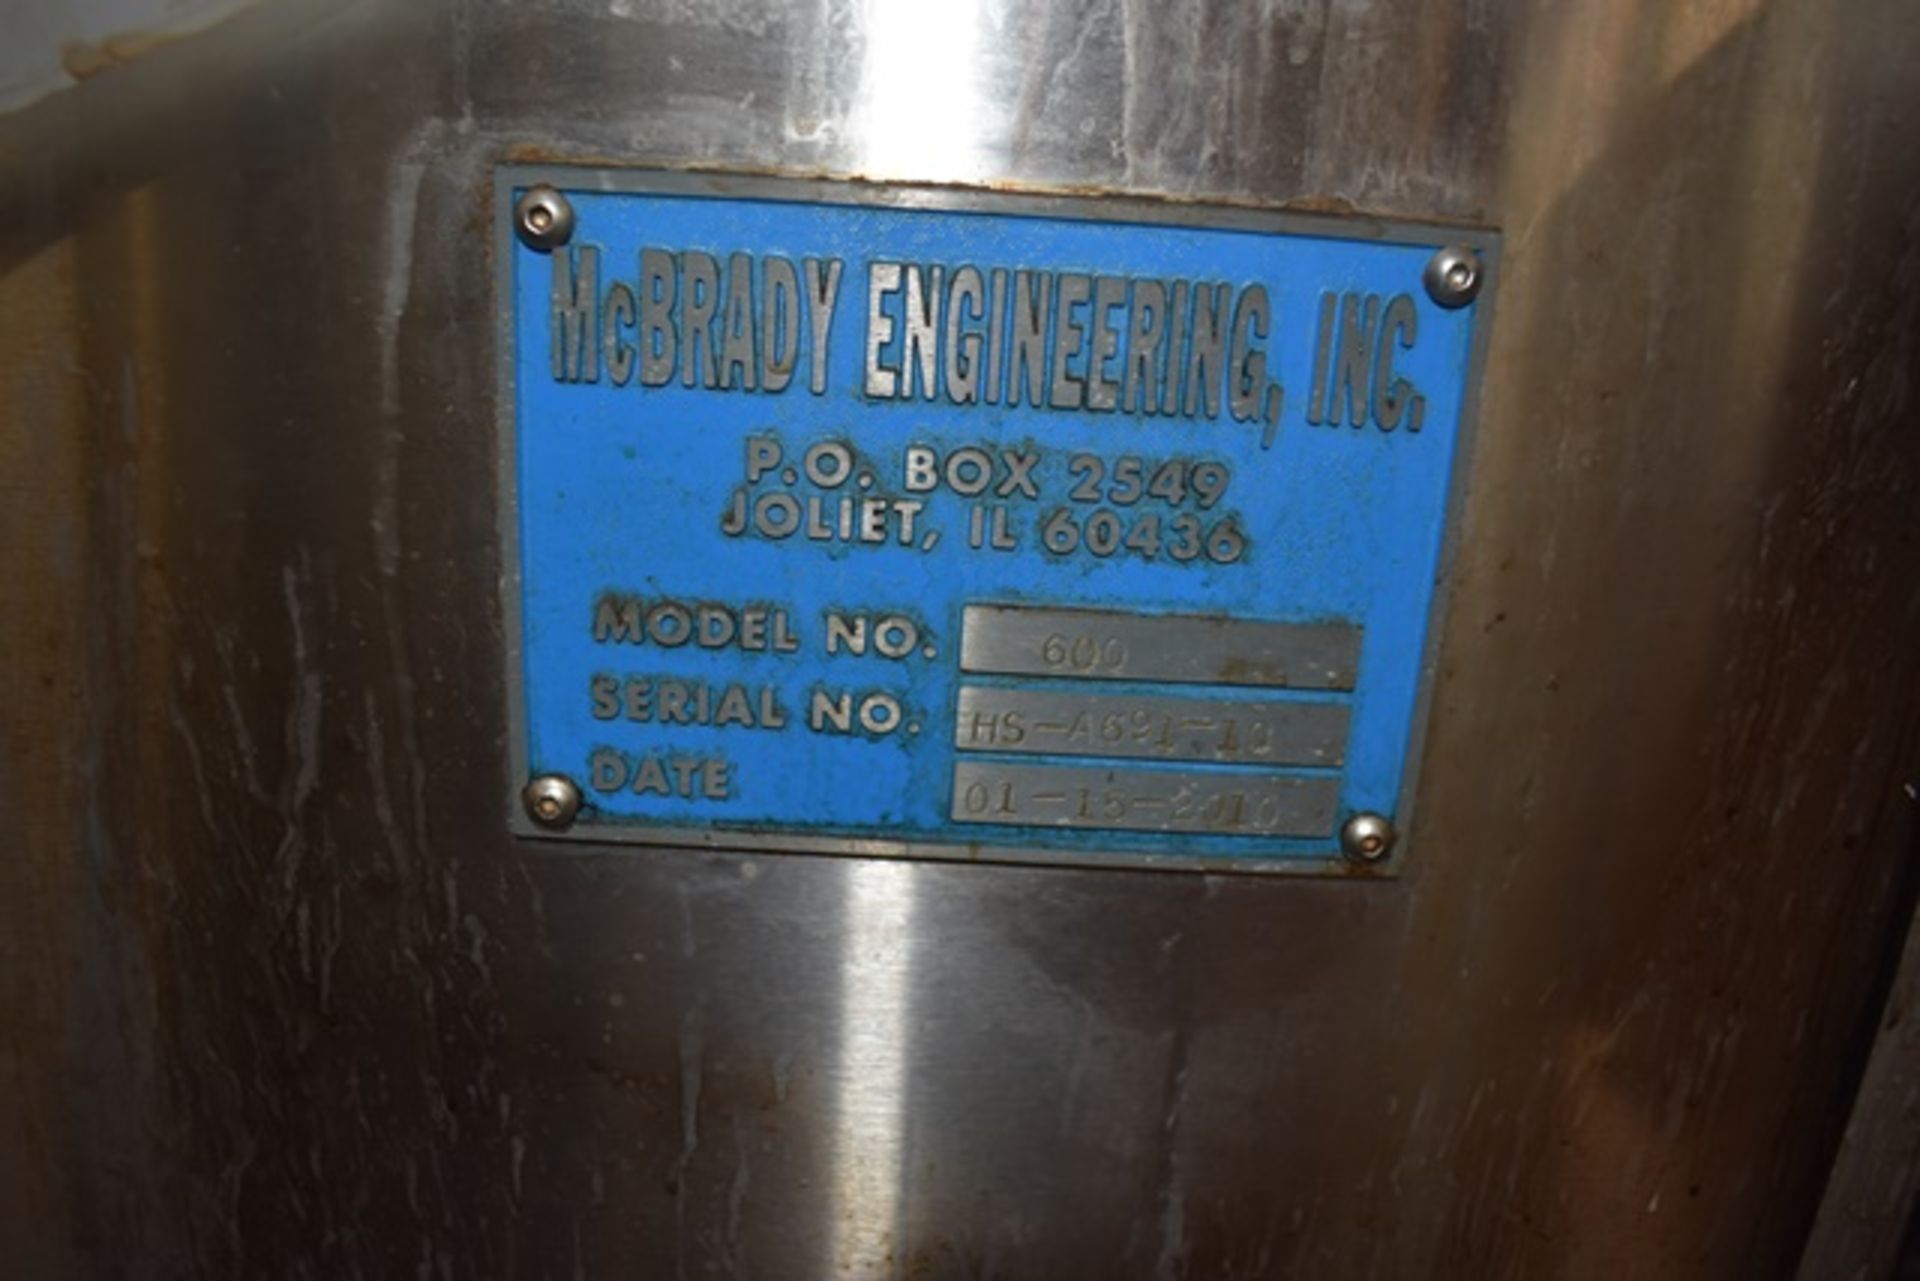 Mc Brady Engineering c line cleaner, model 600, s/n HS A691 10, 450 jars/min, air/water/sanitary - Image 3 of 4